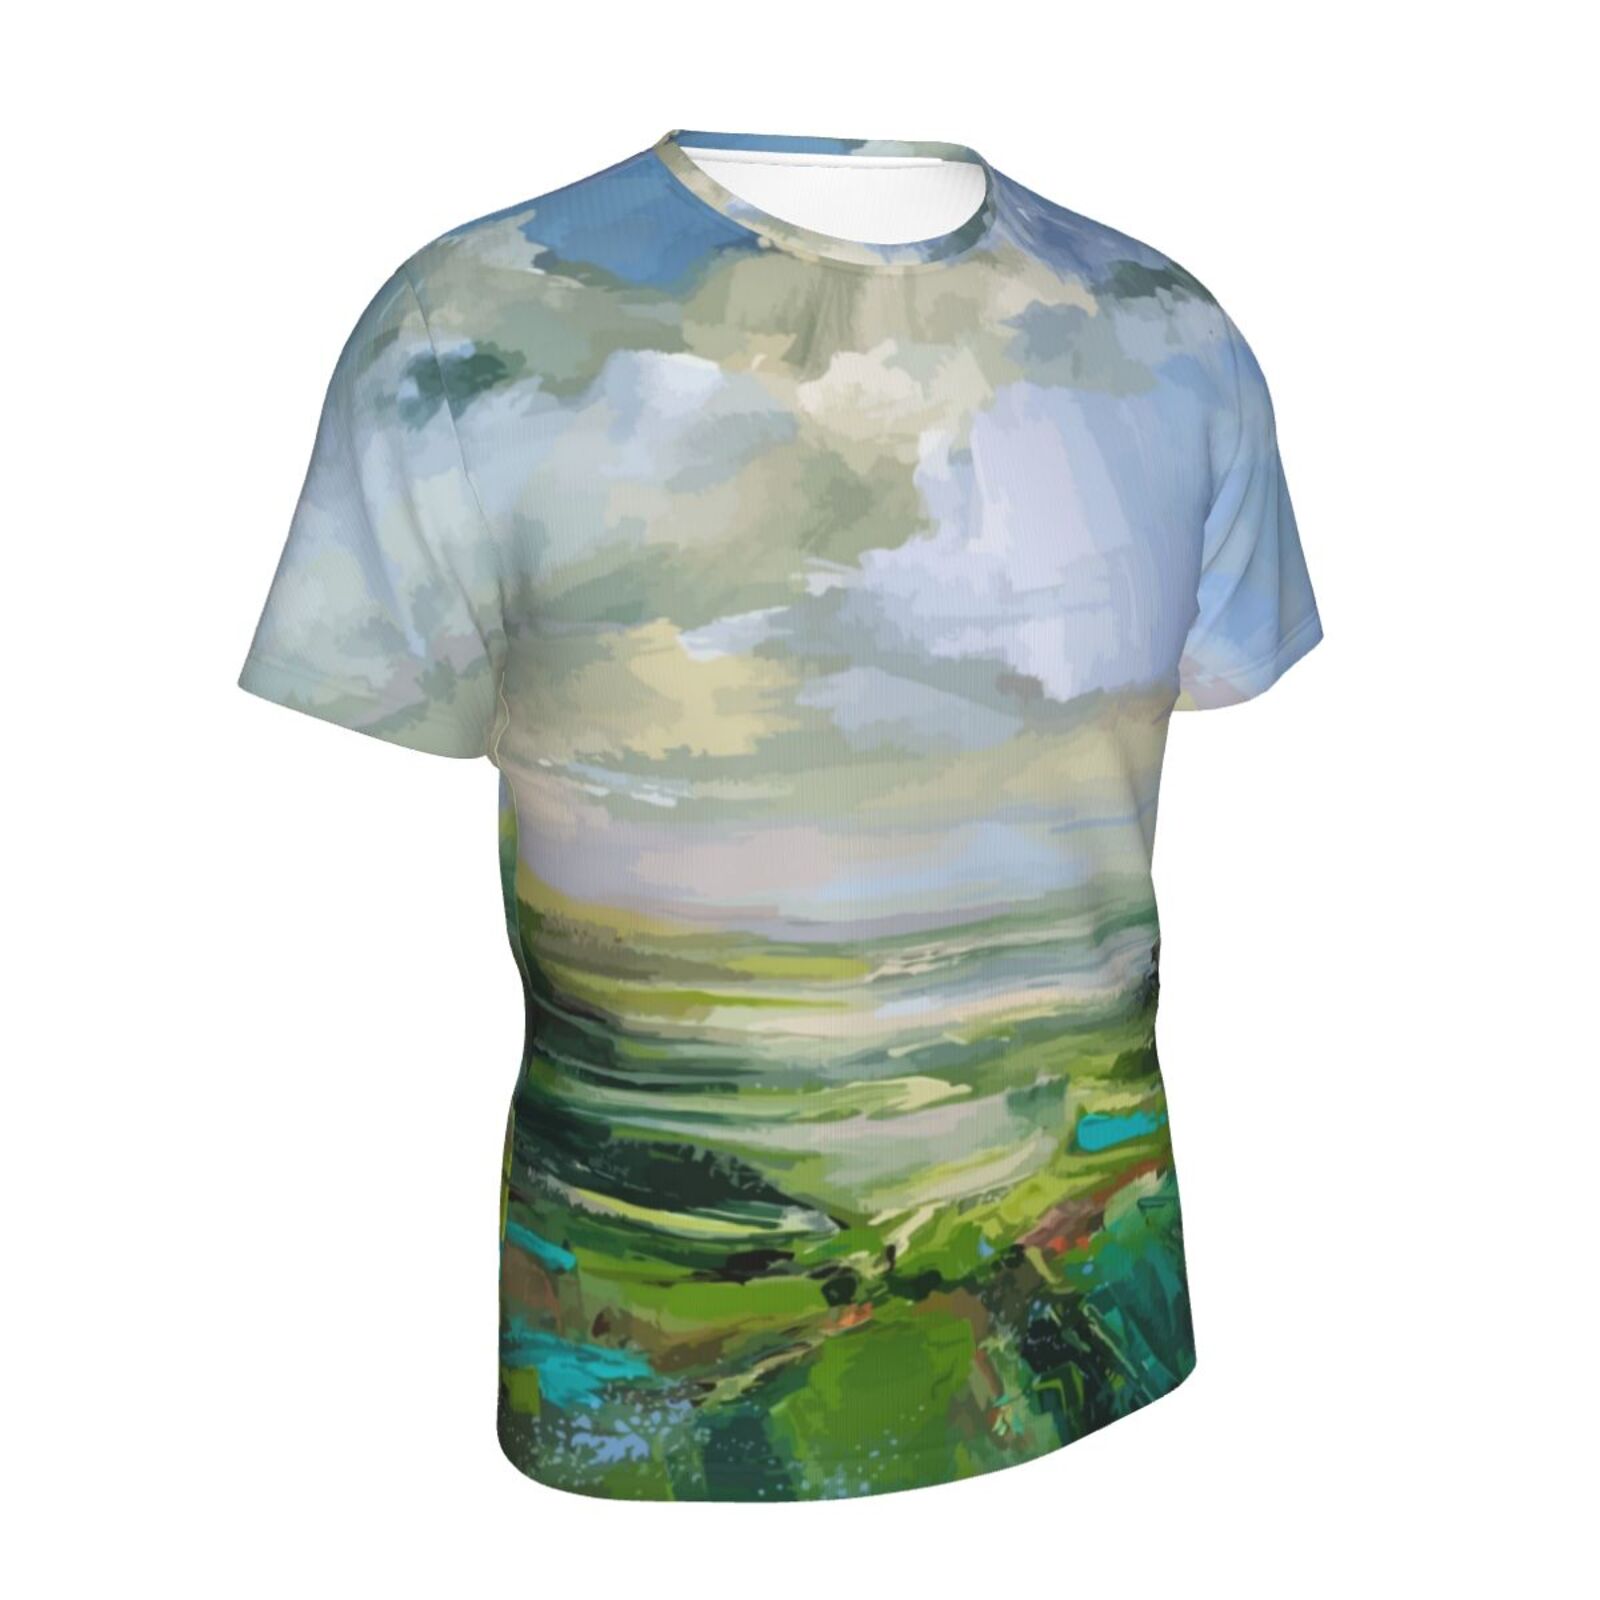 Klassisches T Shirt mit Sommergrün Malelementen